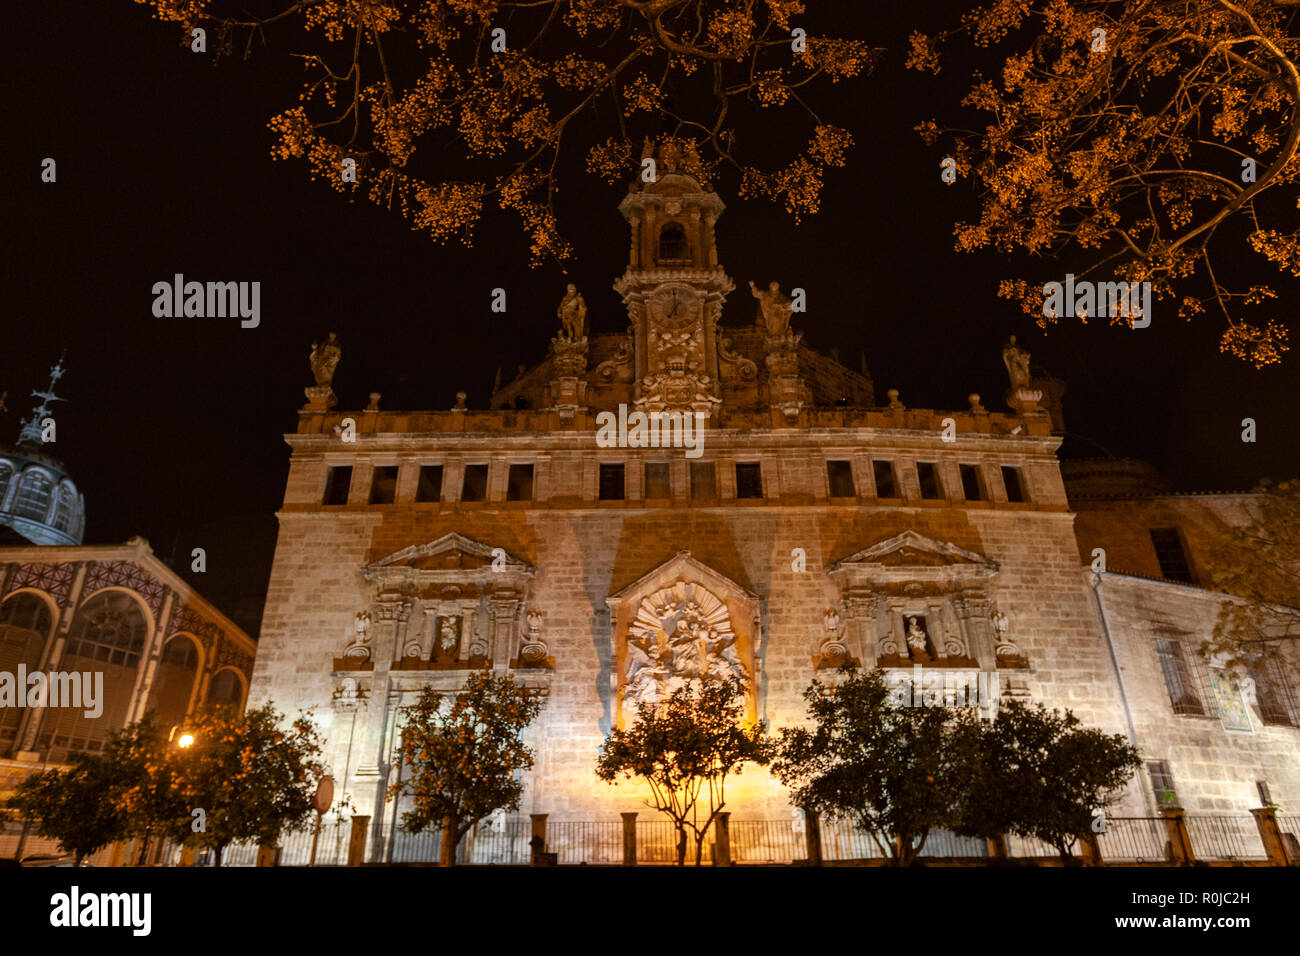 Fassade des La Lonja, die llotja de la Seda oder die La Lonja Seide Exchange, bei Nacht, Valencia, Spanien Stockfoto